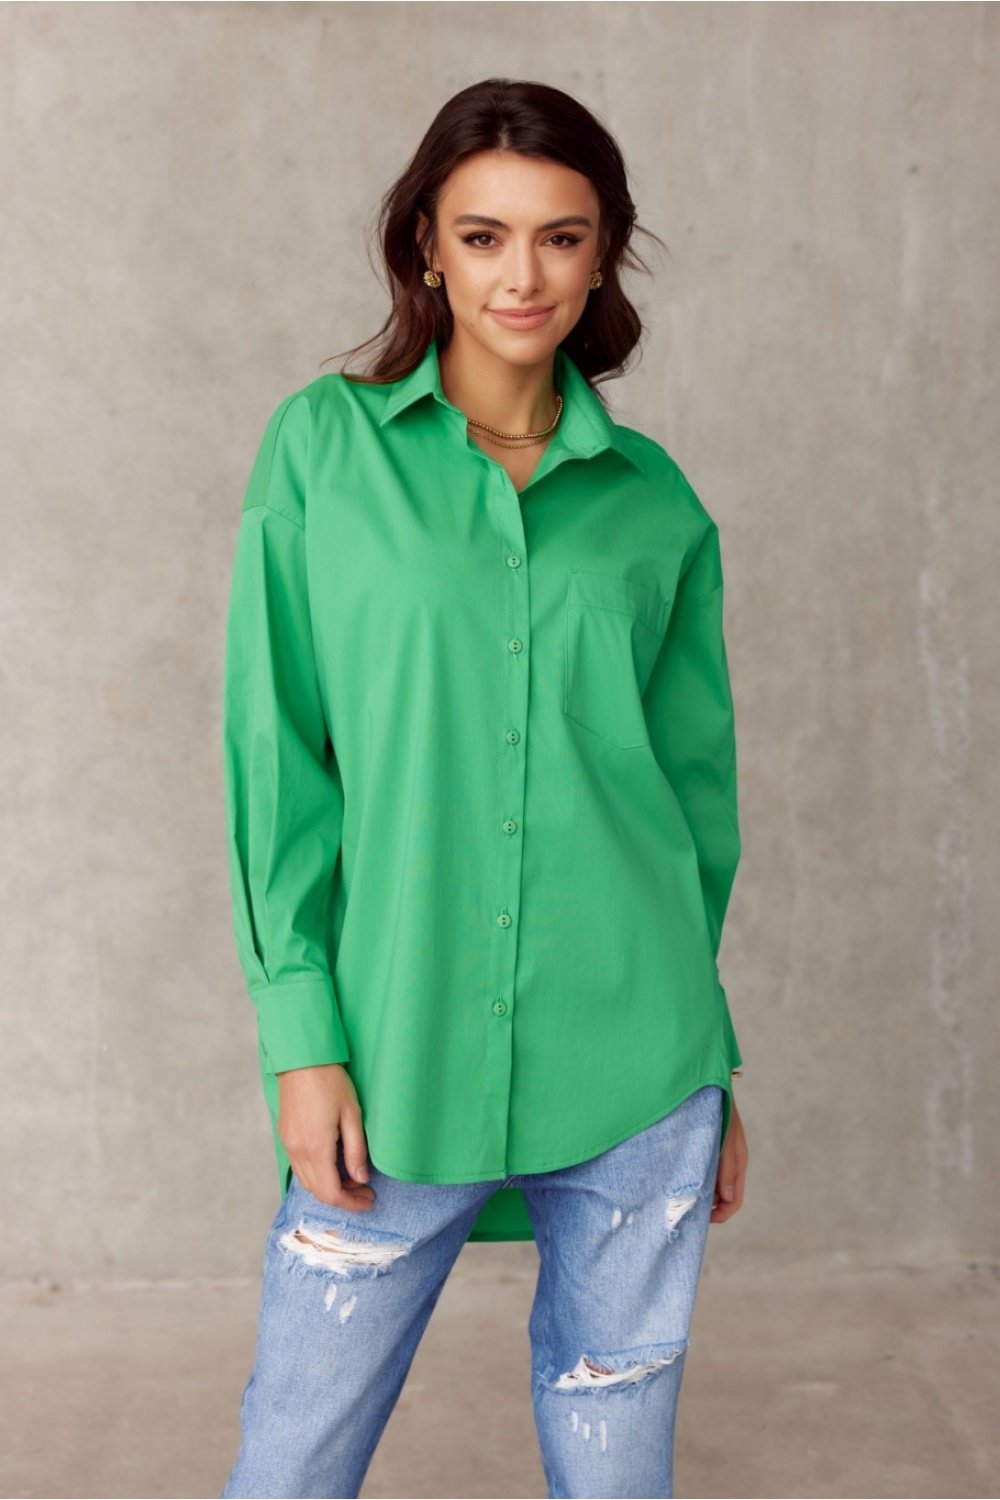 Long sleeve shirt model 176689 Roco Fashion Posh Styles Apparel